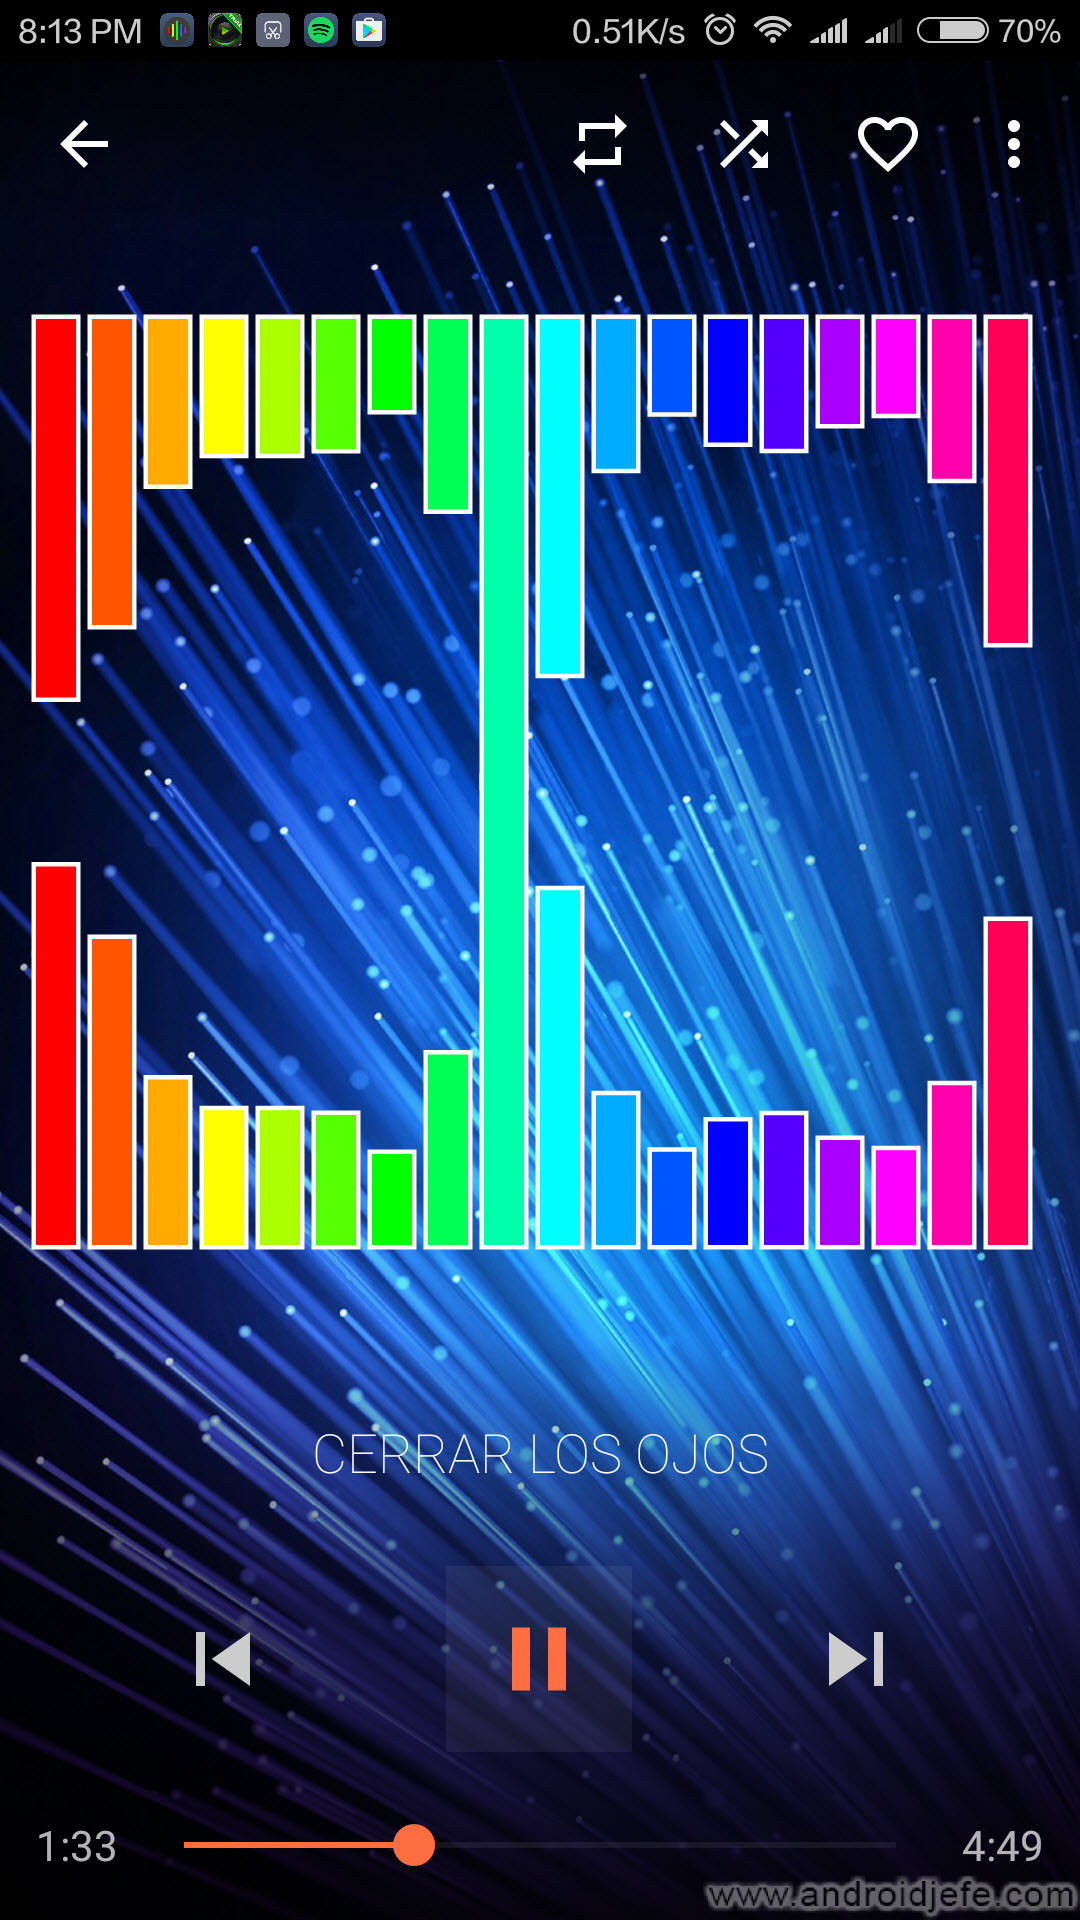 5 reproductores efectos visuales al ritmo de la musica: espectro, barras